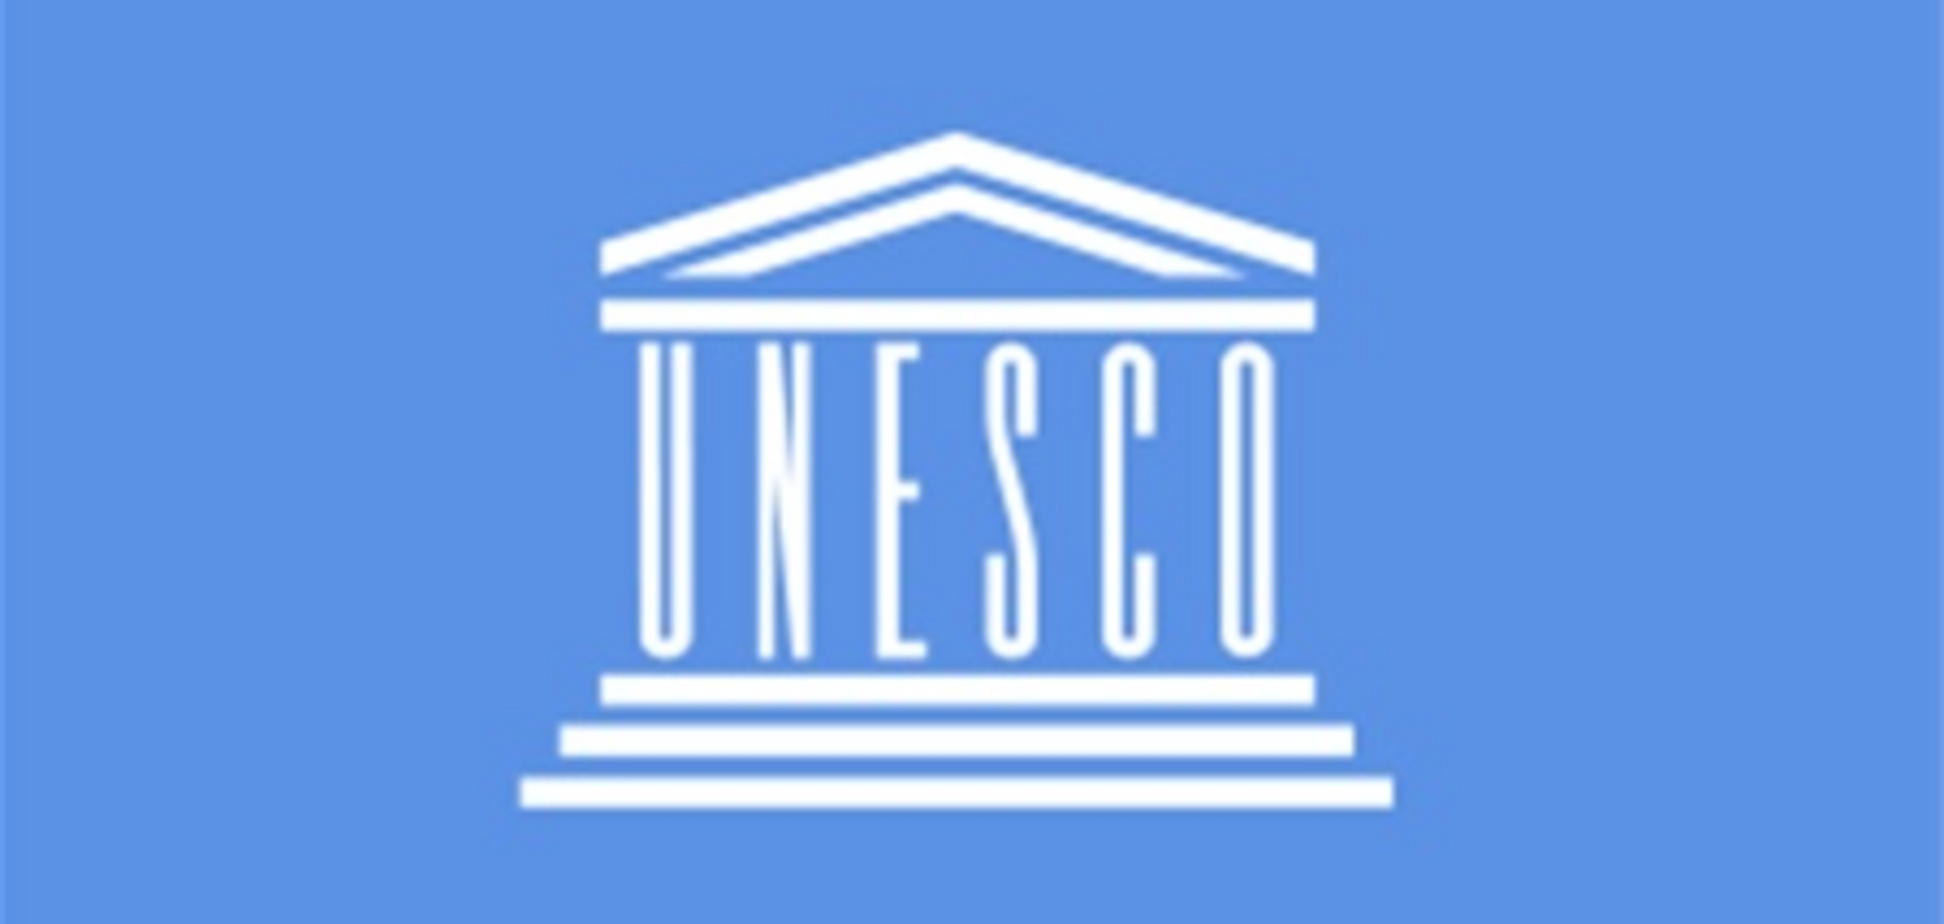 Центр ЮНЕСКО может переместиться в Крым